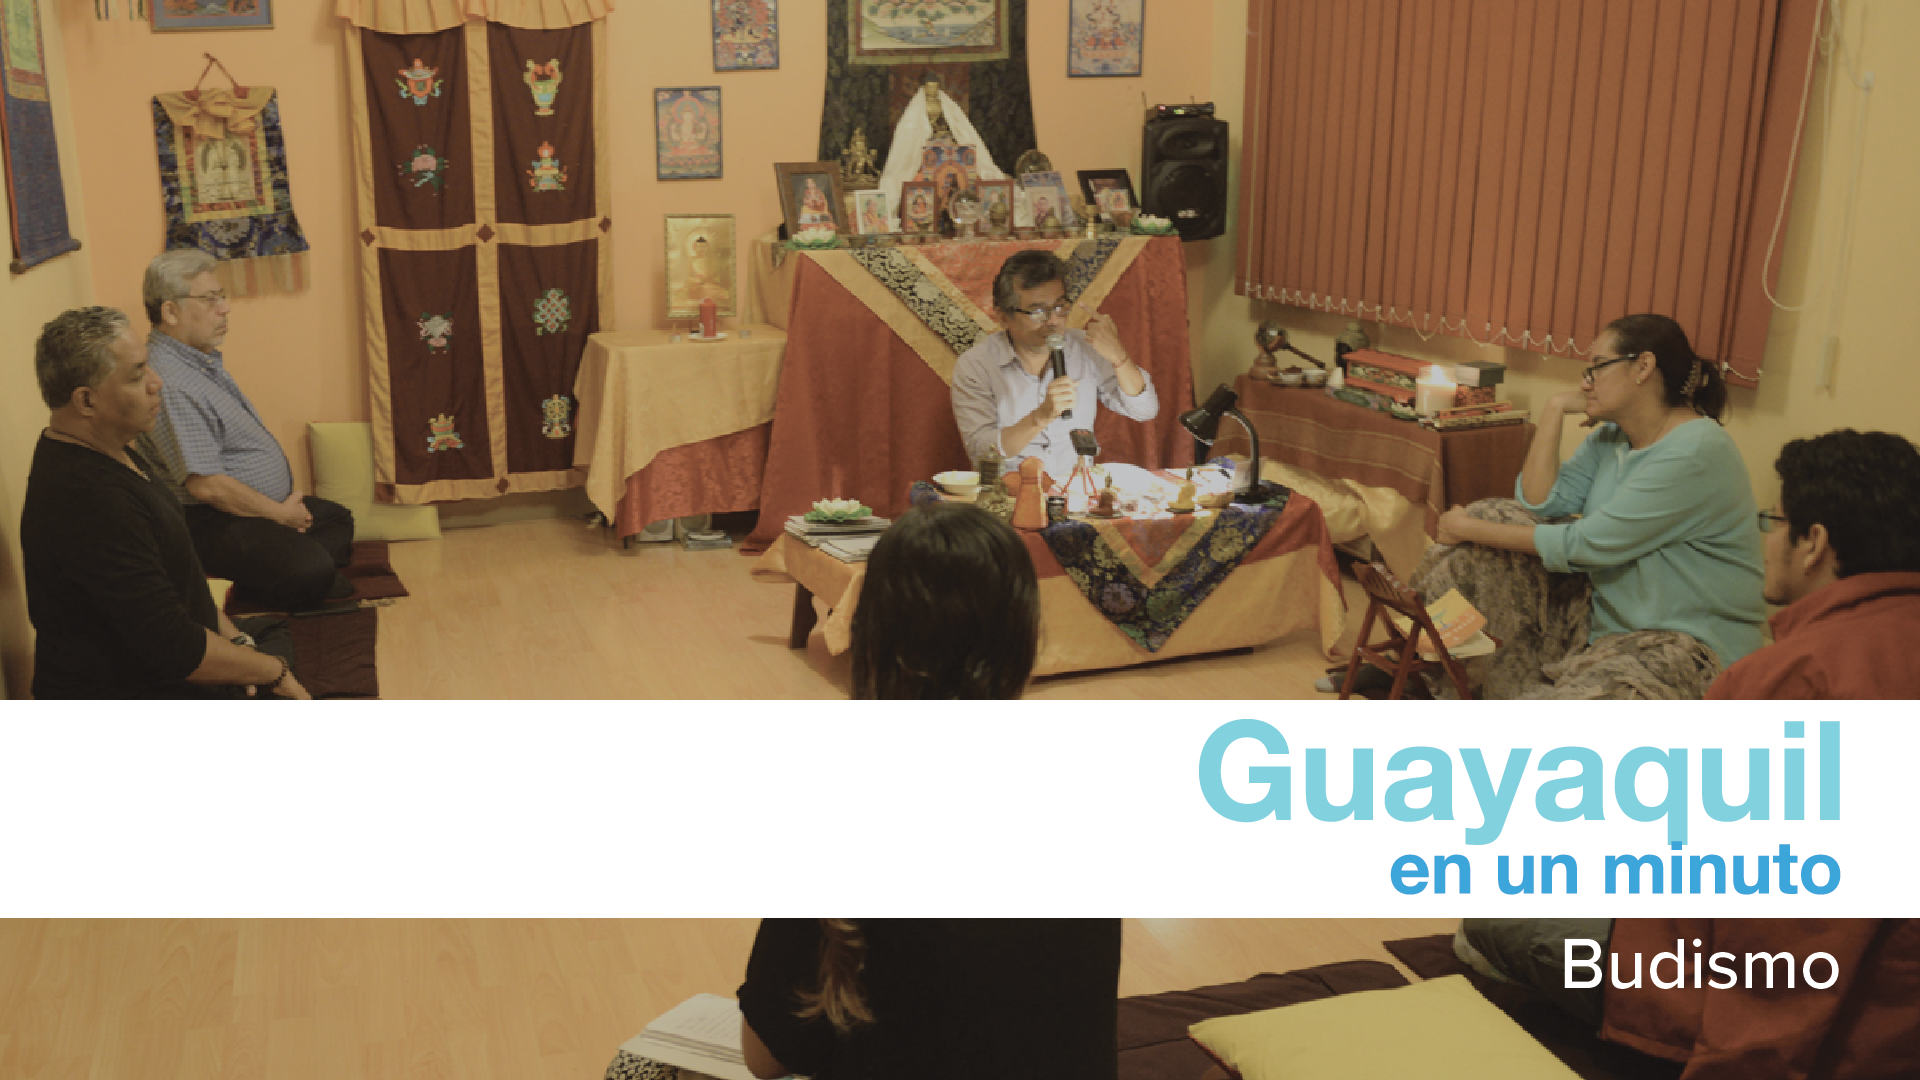 Guayaquil en 1 minuto: Budistas